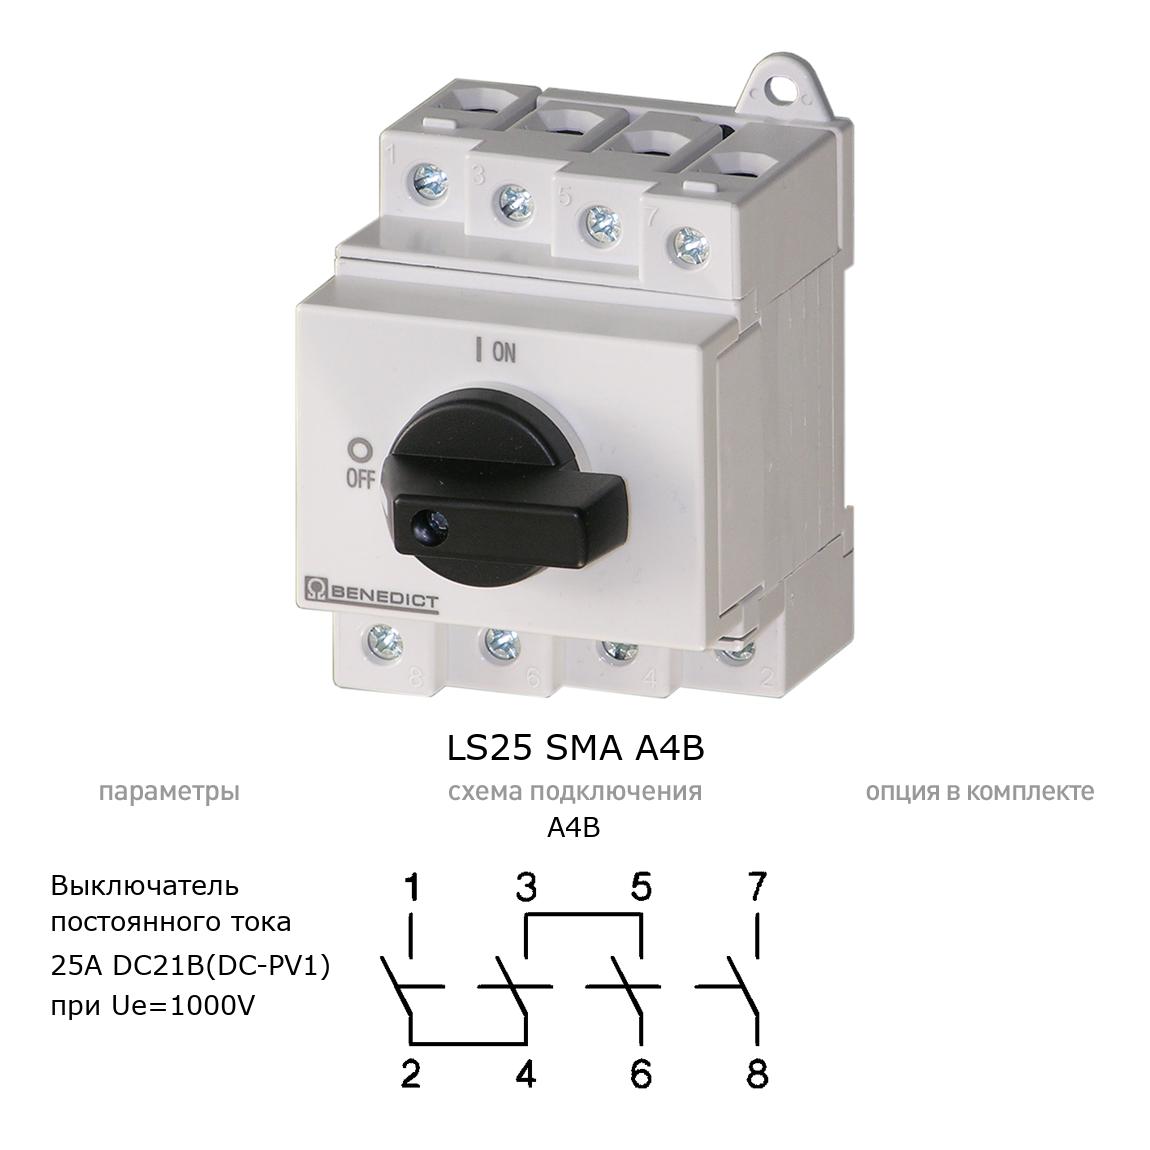 Кулачковый переключатель для постоянного тока (DC) LS25 SMA A4B BENEDICT